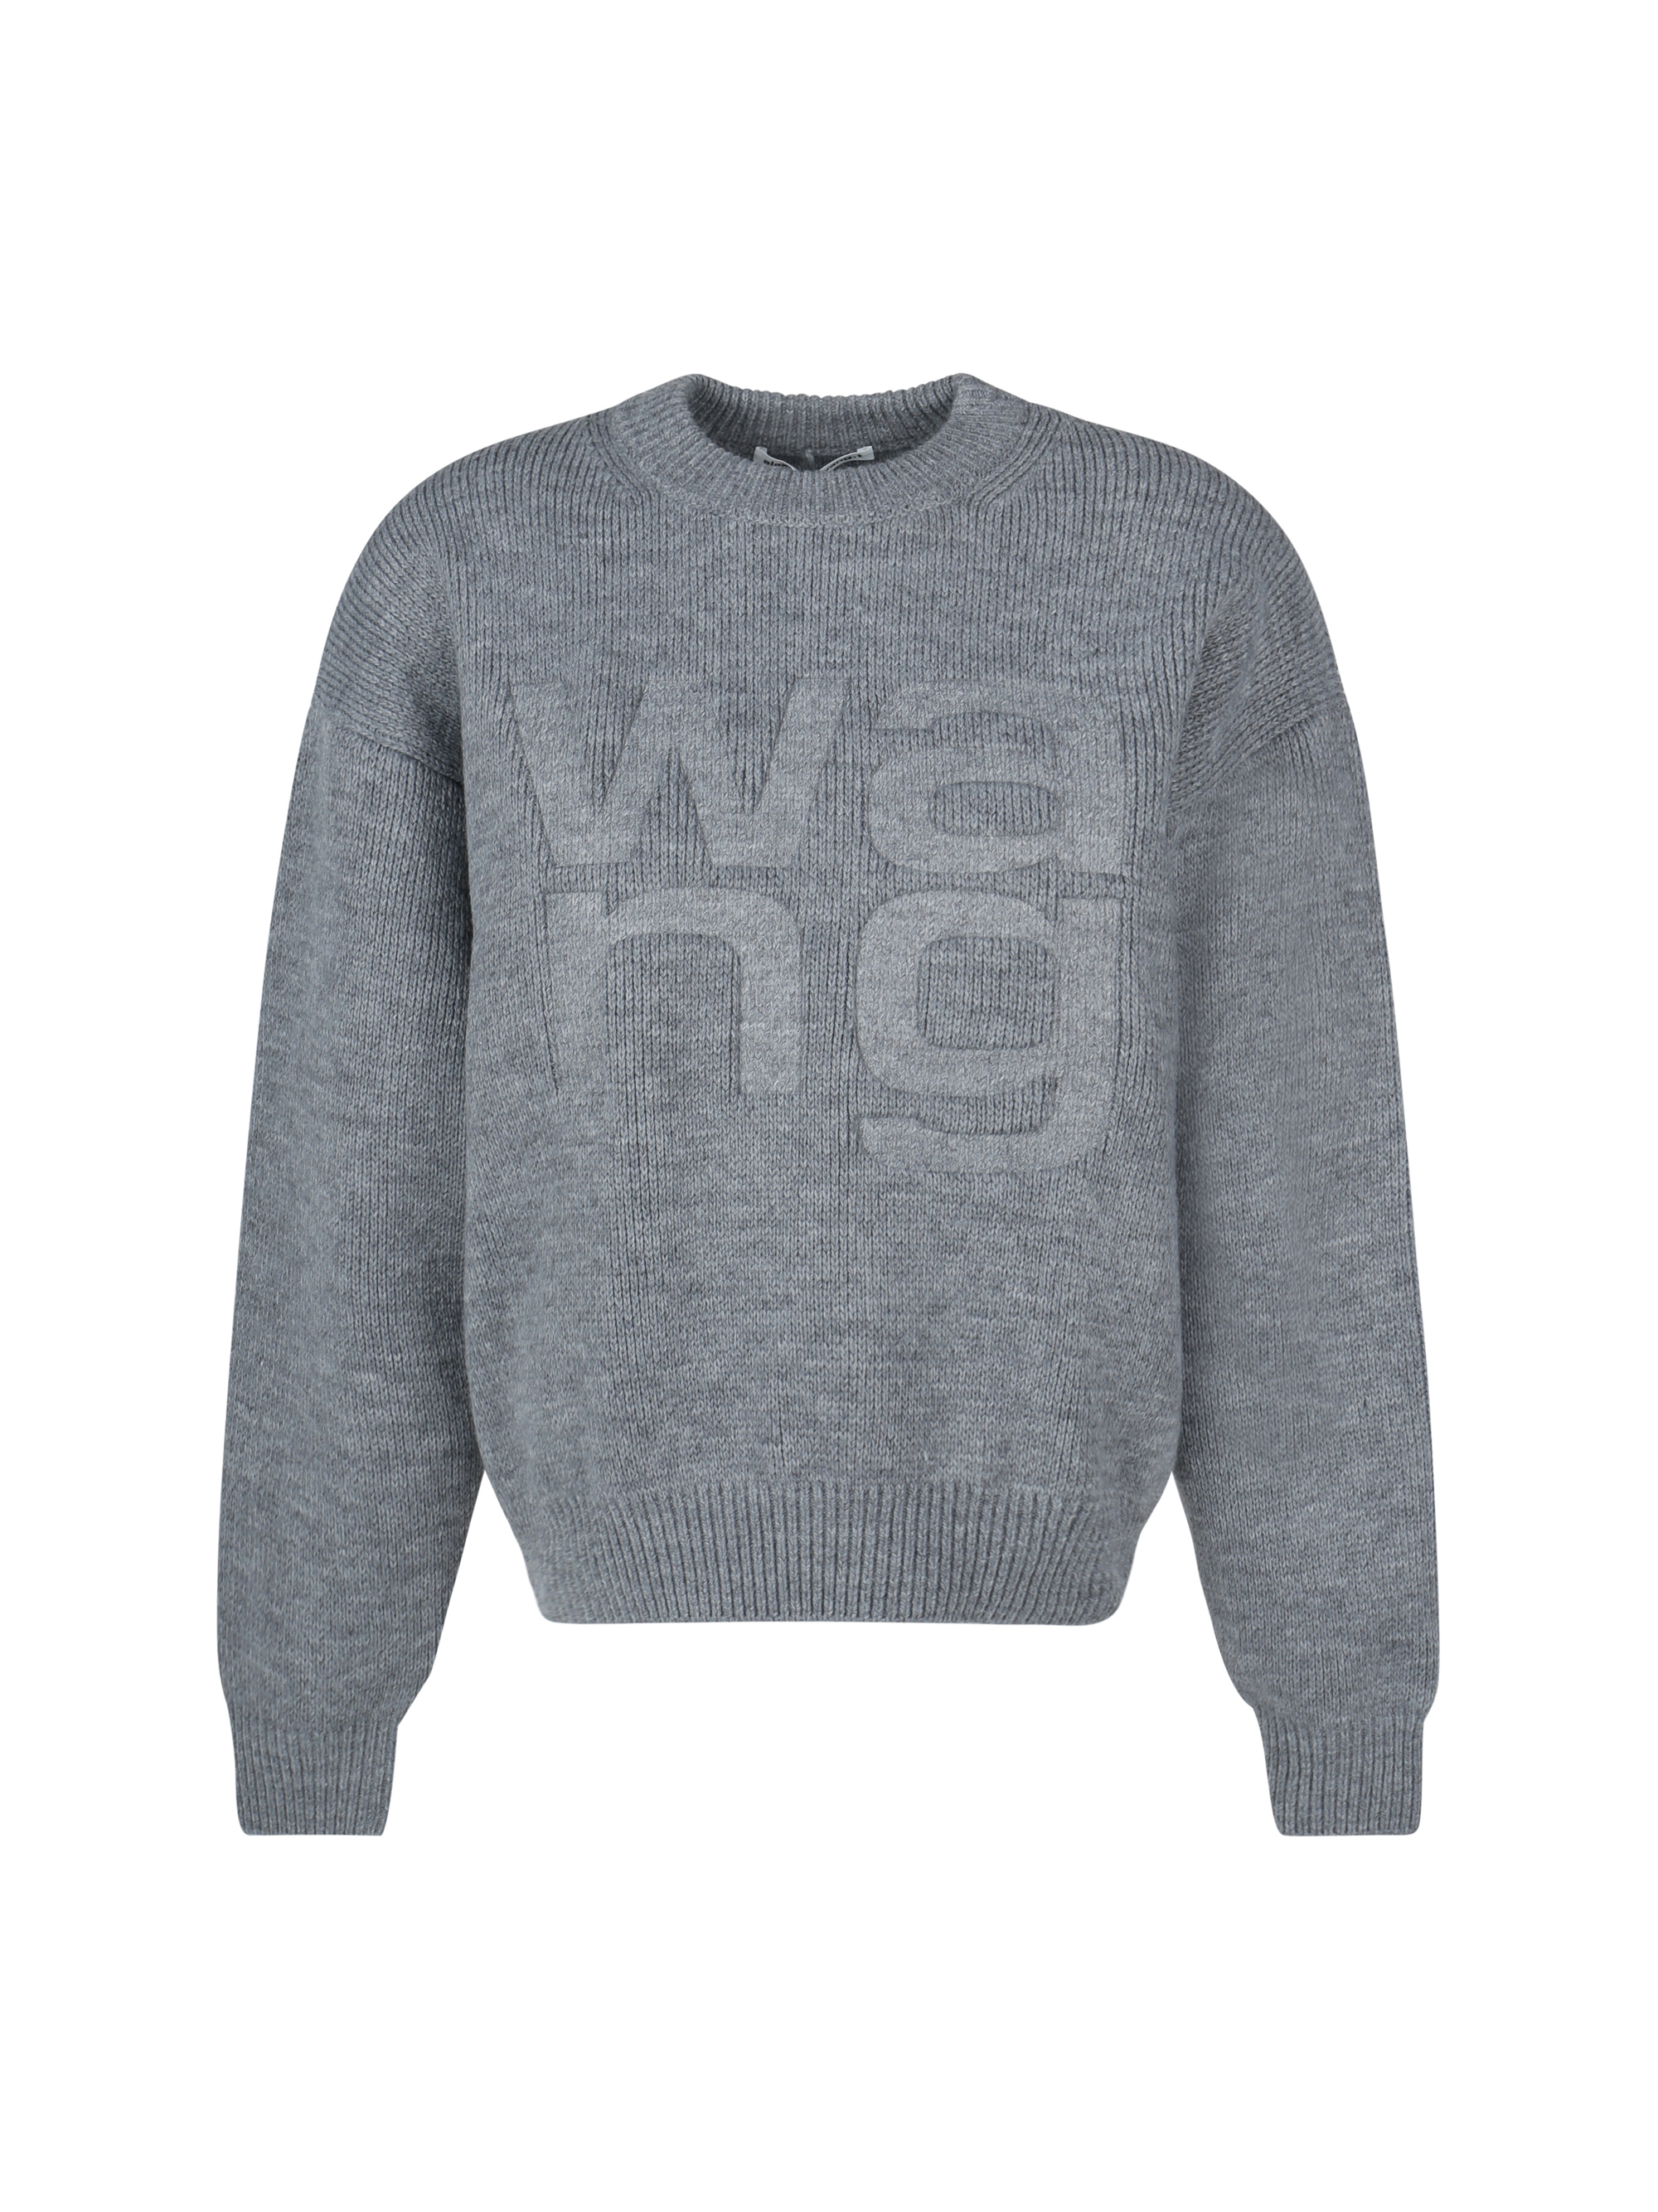 alexander wang - sweater